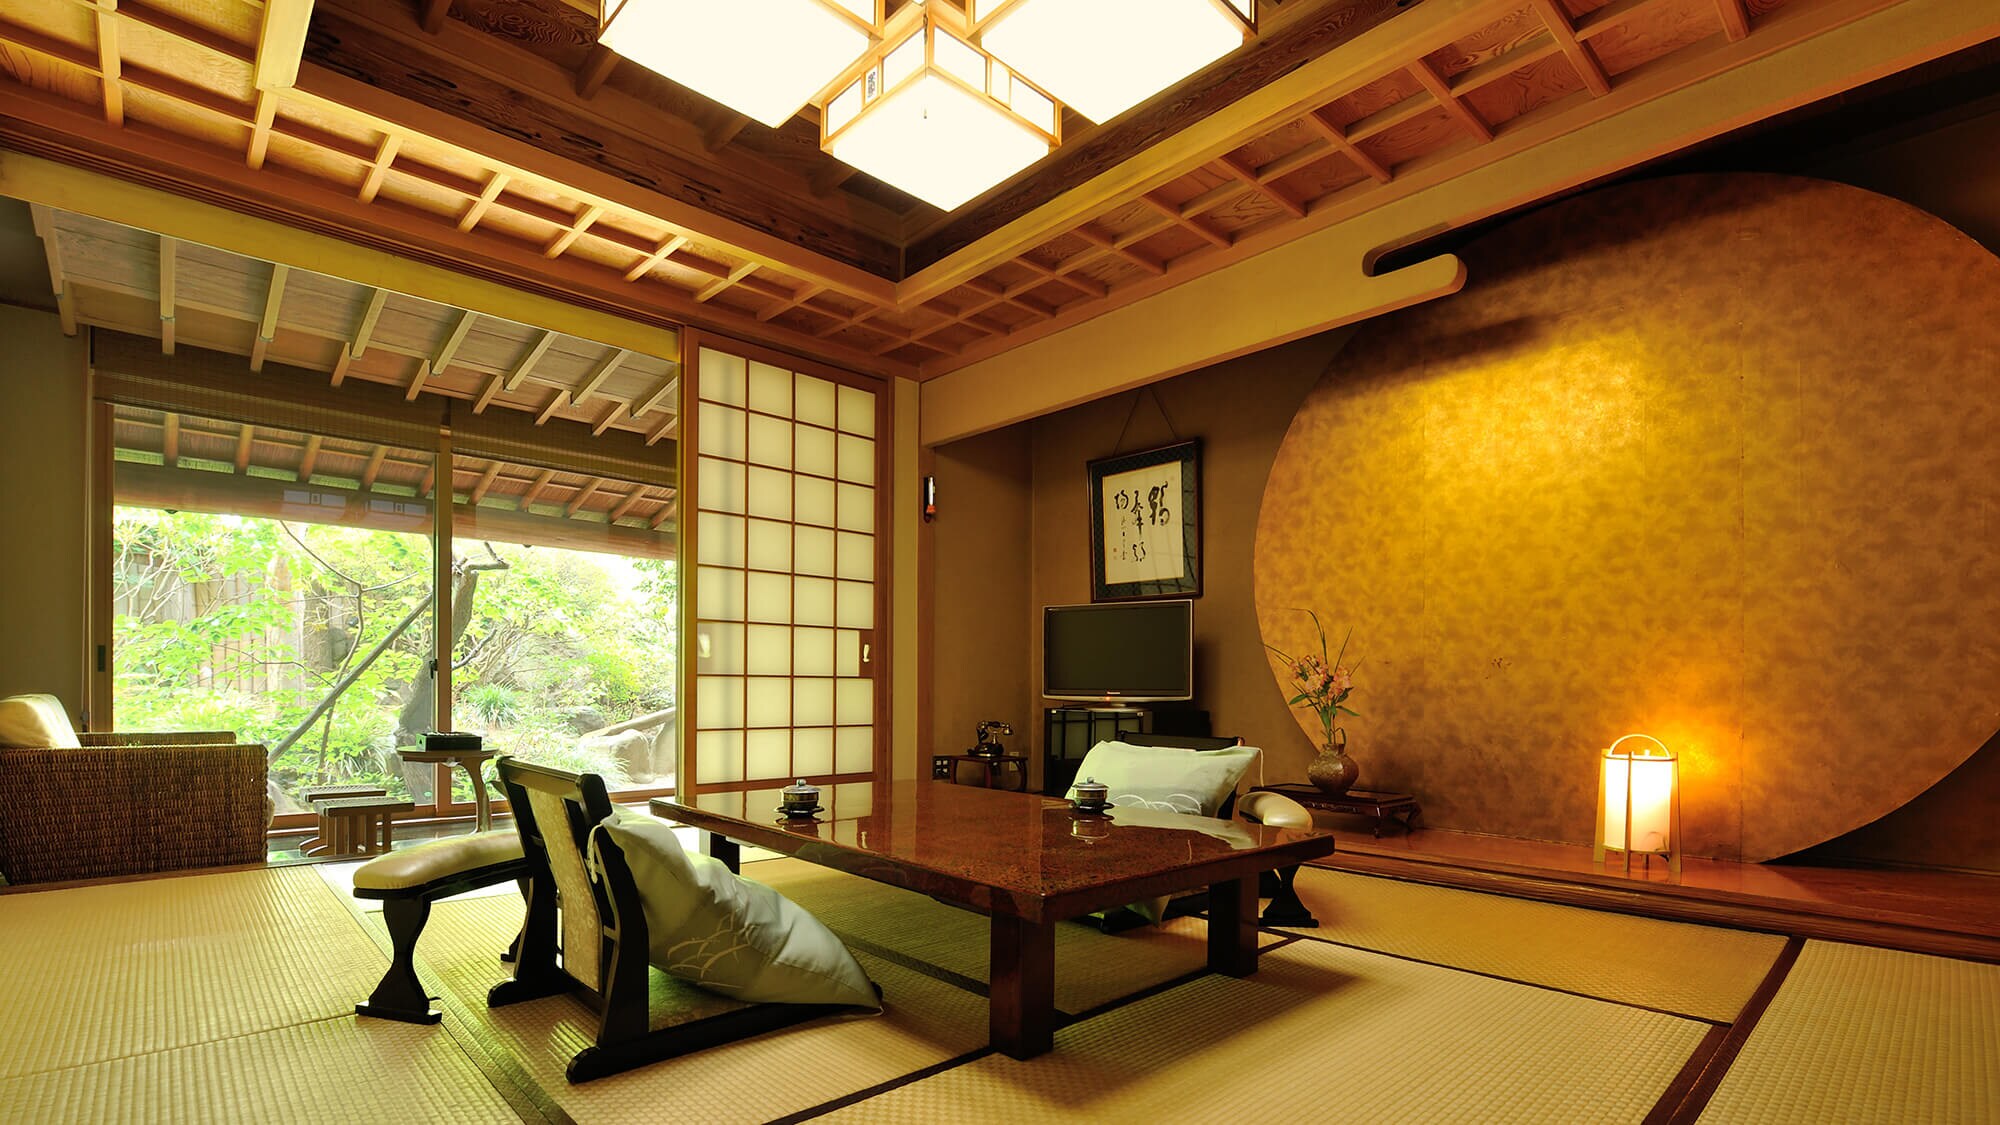 [คัตสึระ] ห้องพักสไตล์ญี่ปุ่นขนาด 10 เสื่อทาทามิ พร้อมอ่างน้ำพุร้อนกลางแจ้ง